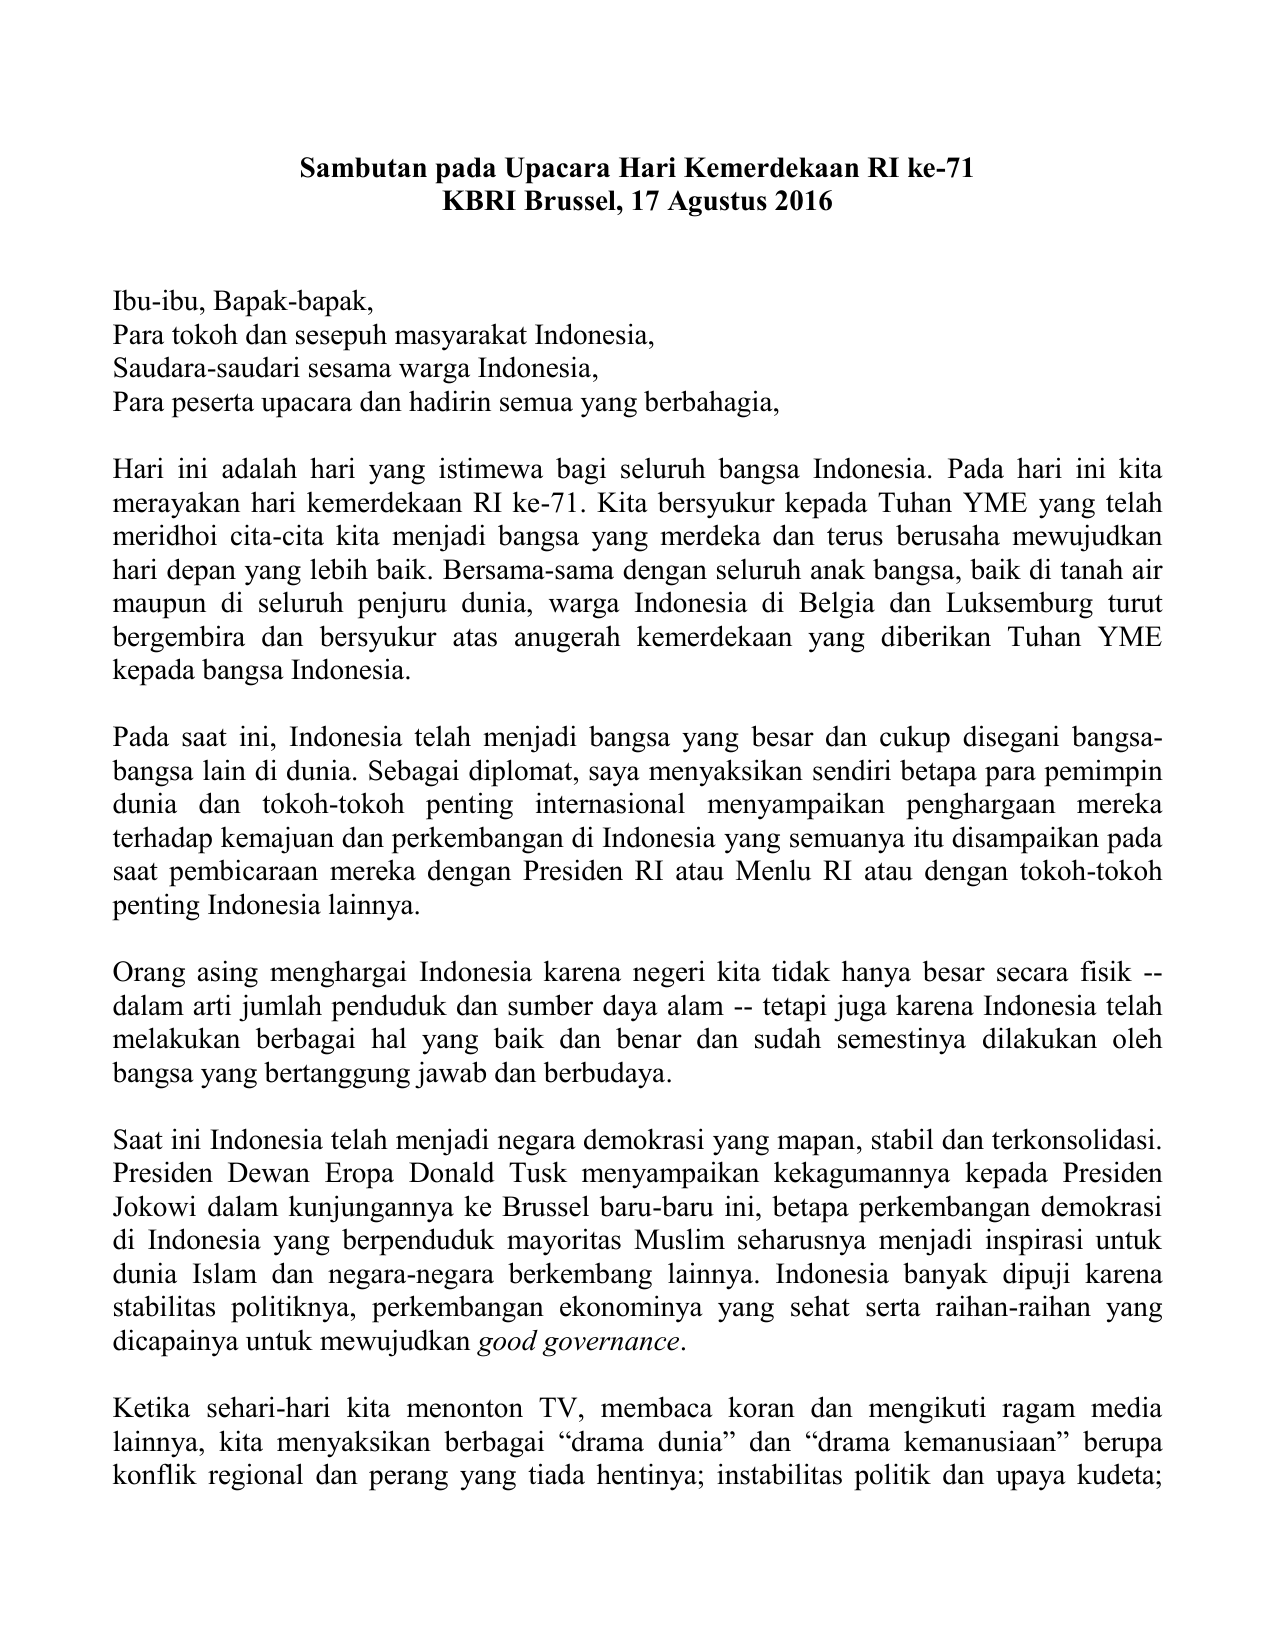 Pidato Hari Kemerdekaan Indonesia